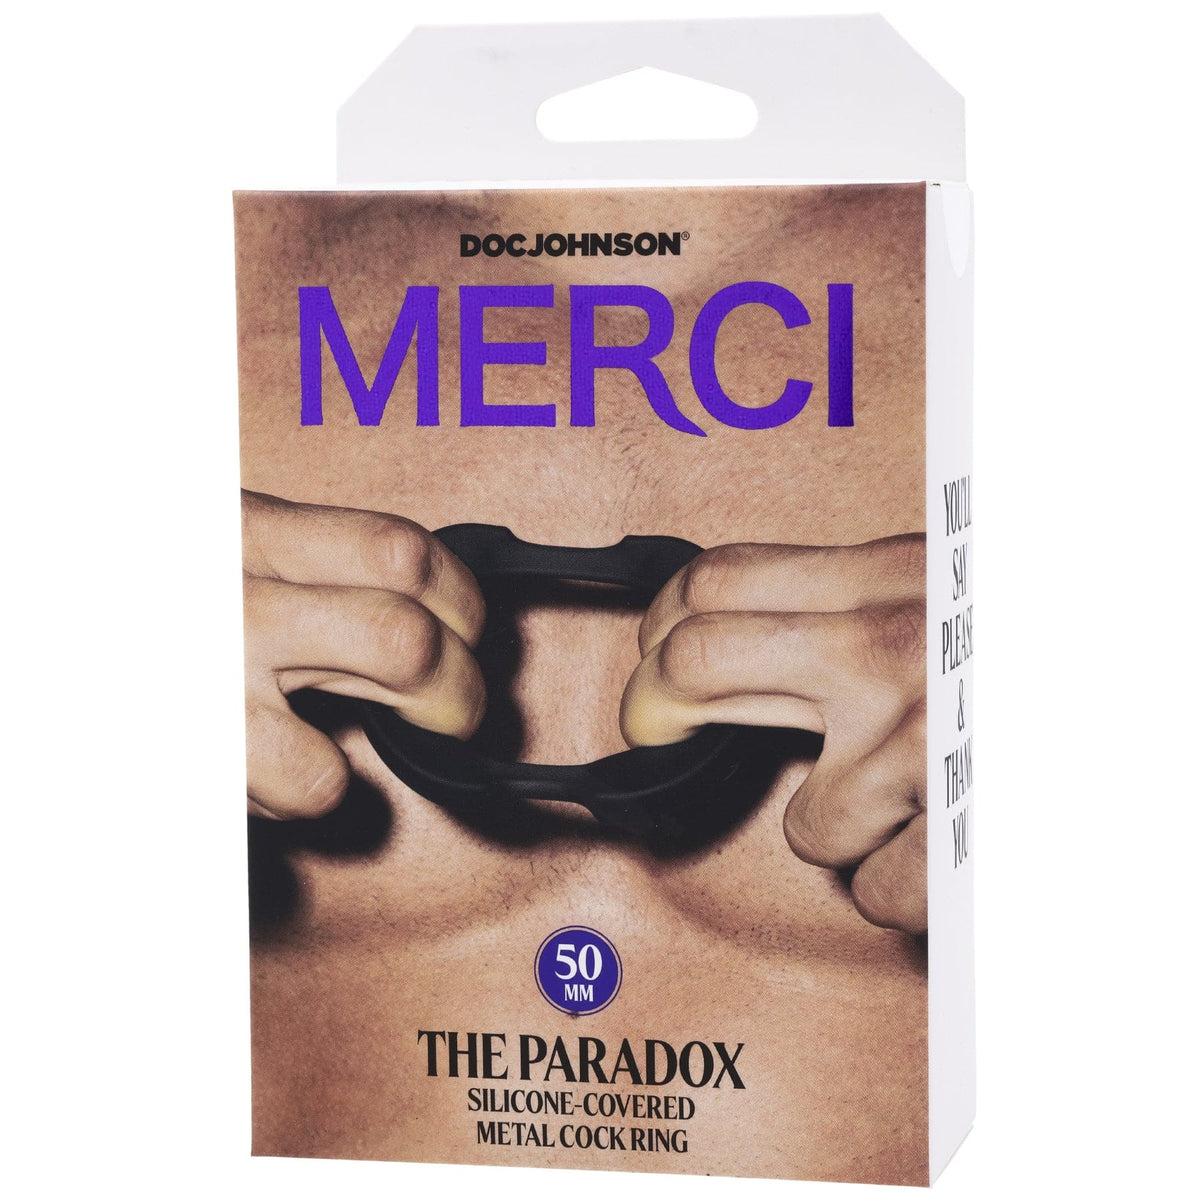 Merci - the Paradox - Anillo para el pene de metal cubierto de silicona - 50 mm - Negro